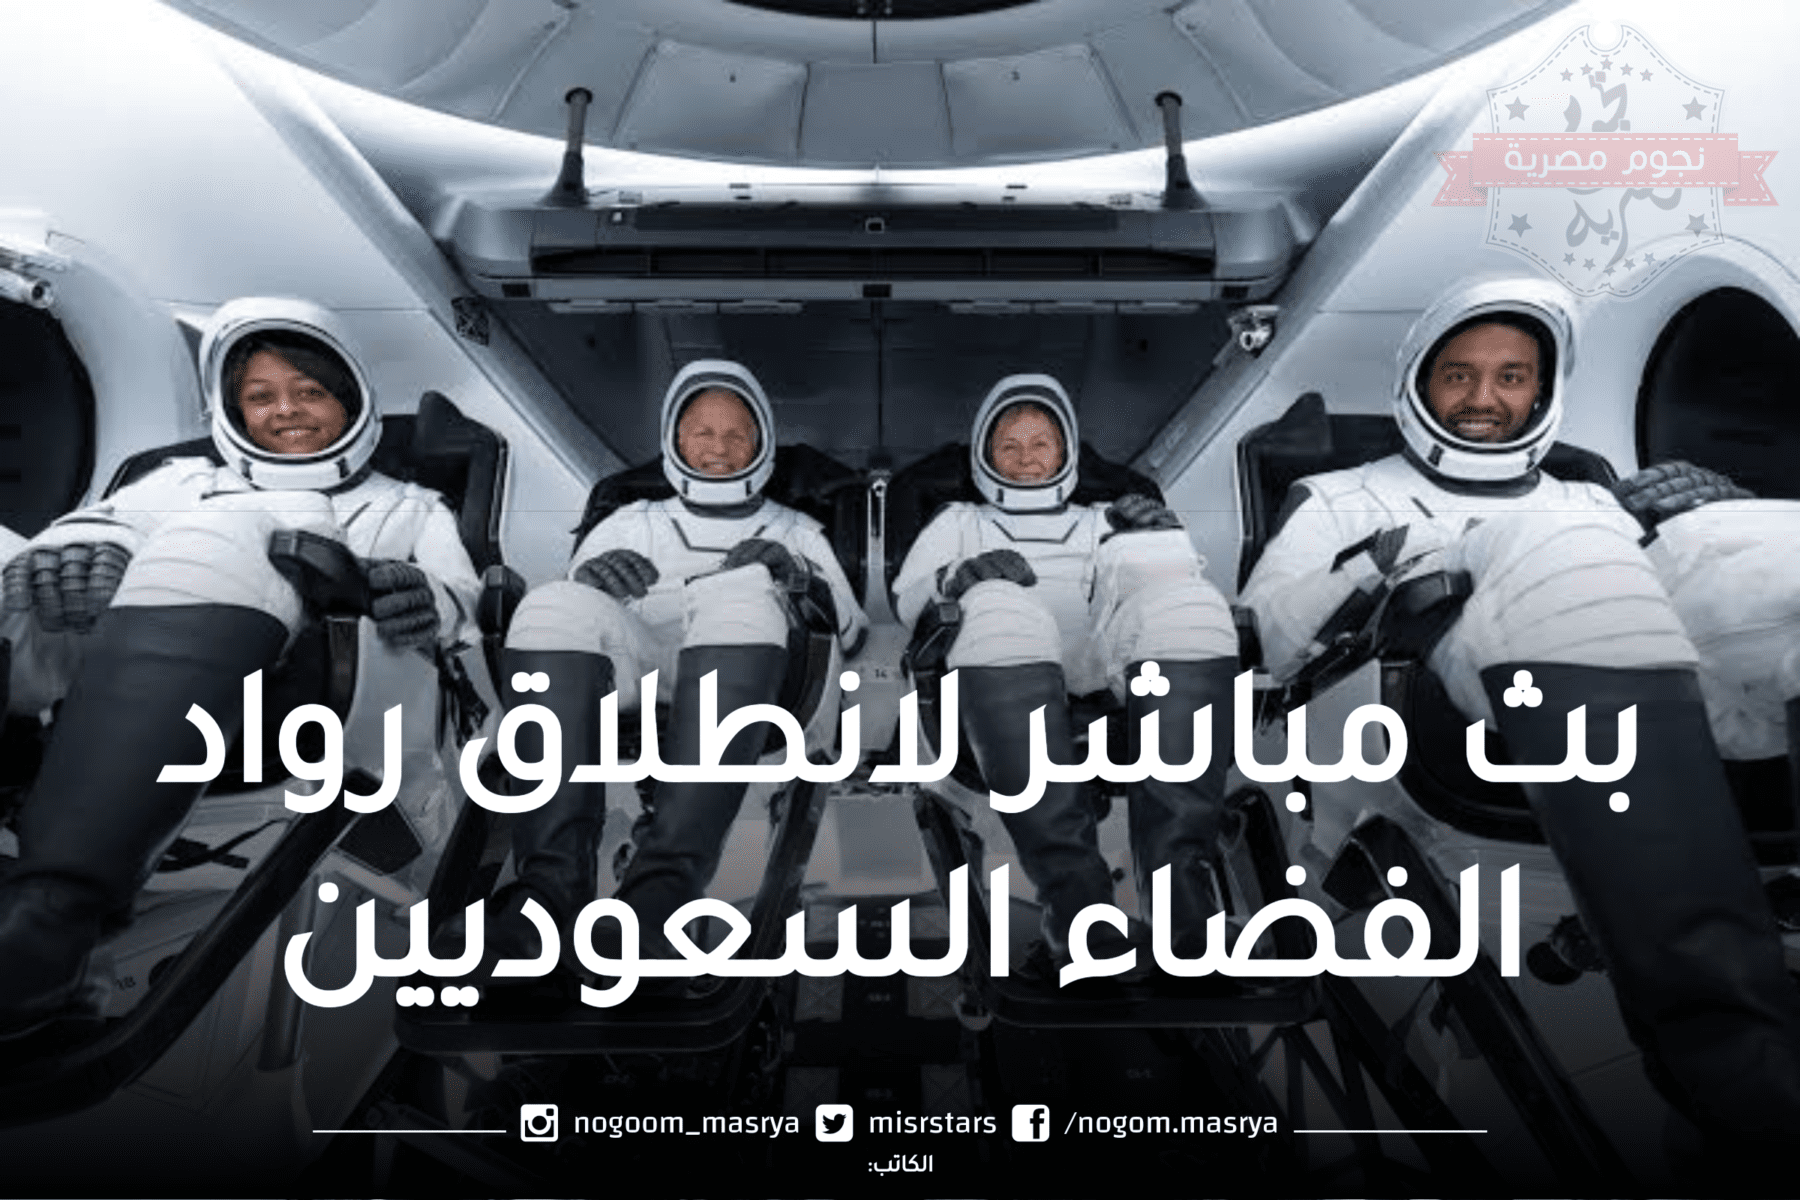 بث مباشر لانطلاق رواد الفضاء السعوديين